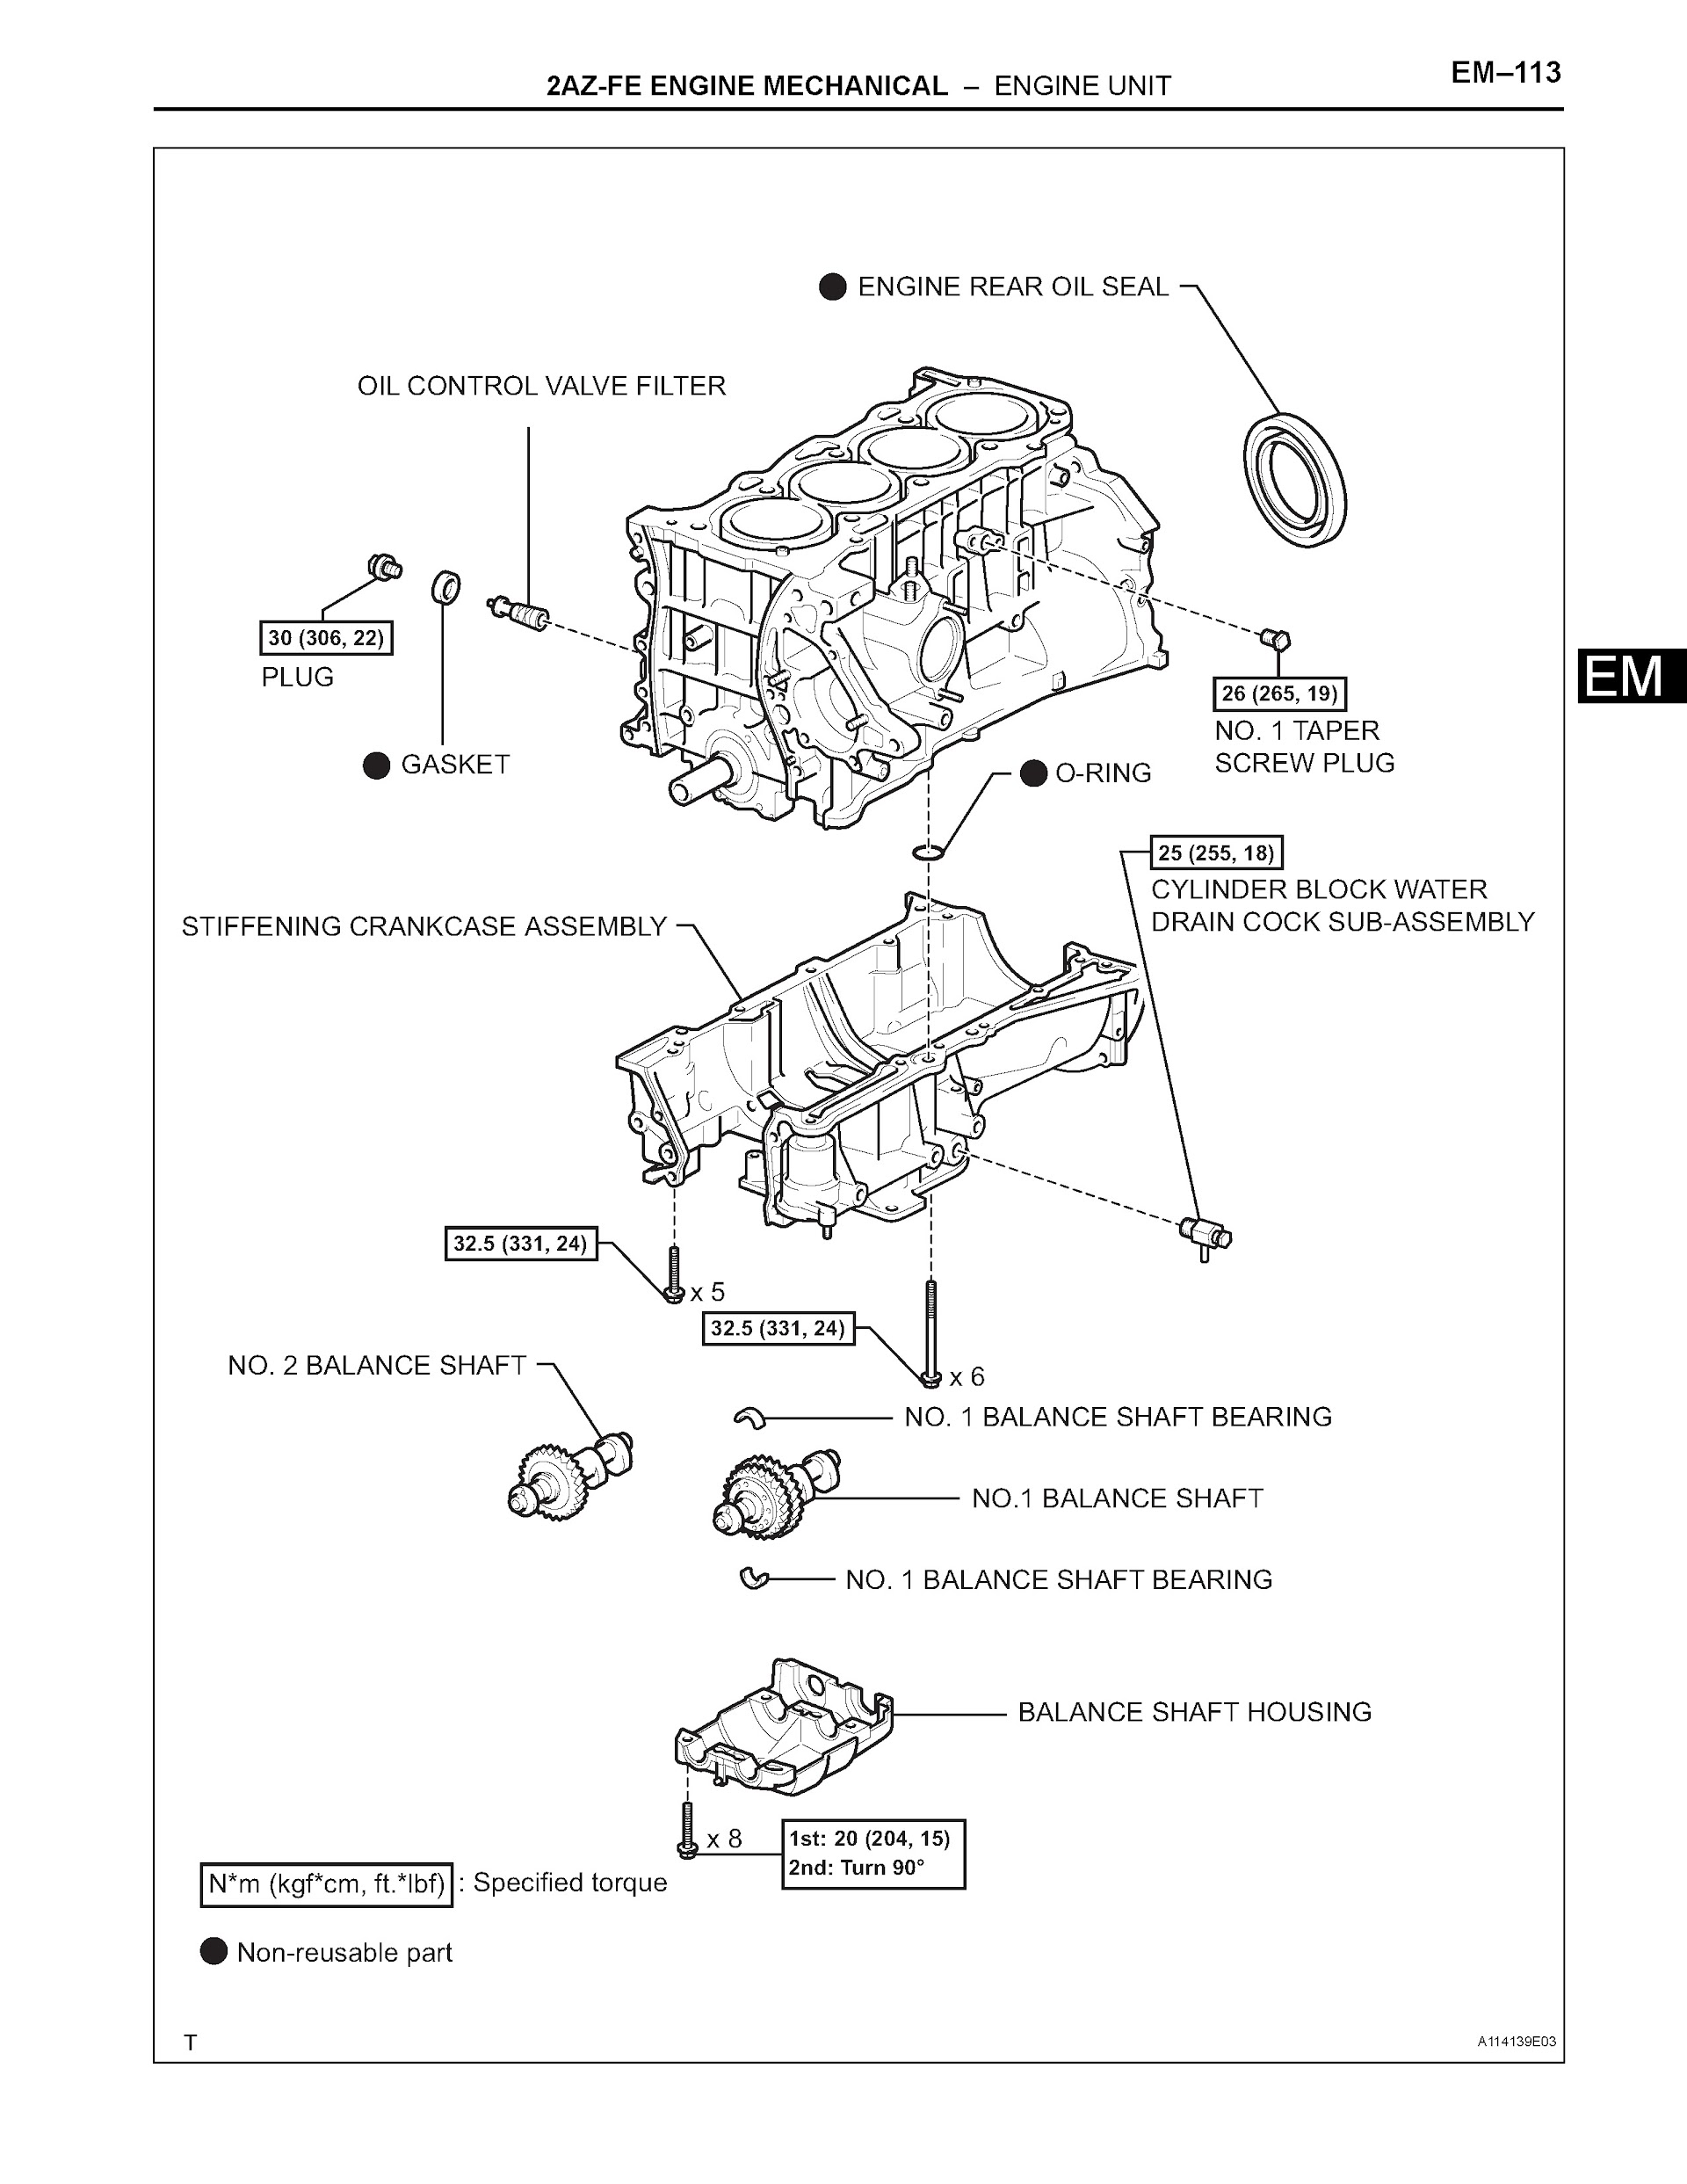 2005 scion tc repair manual pdf